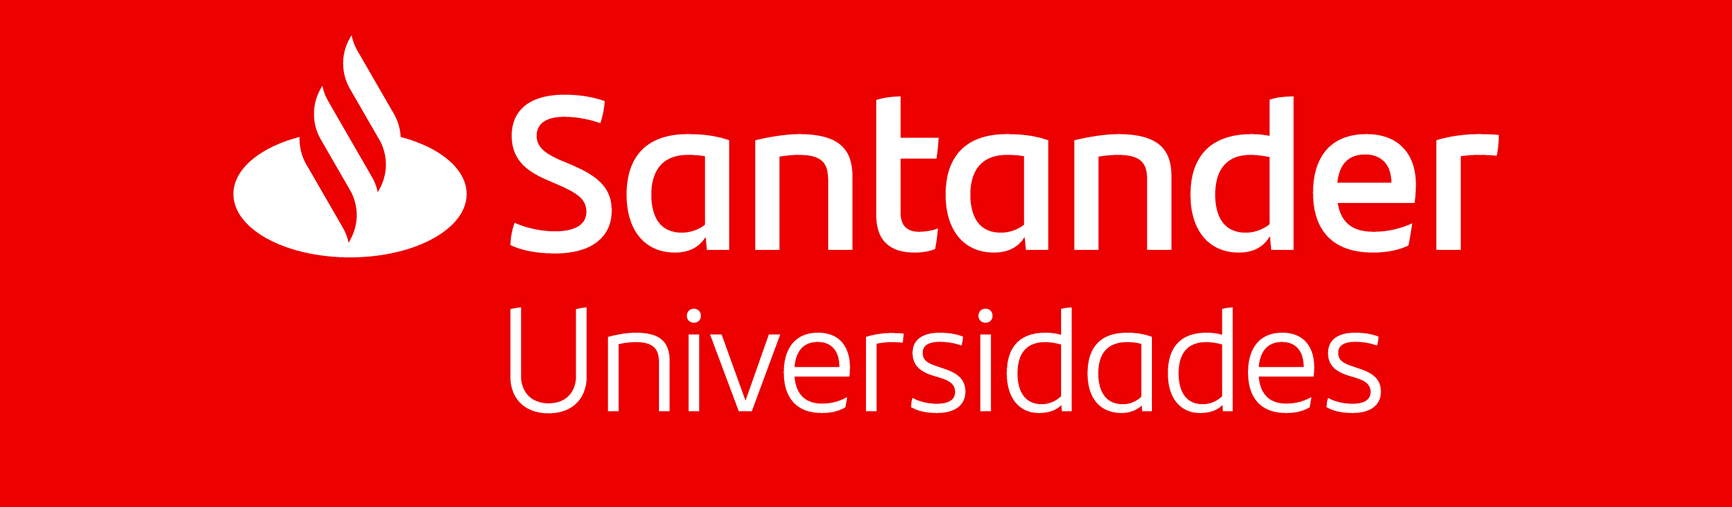 logo santander1